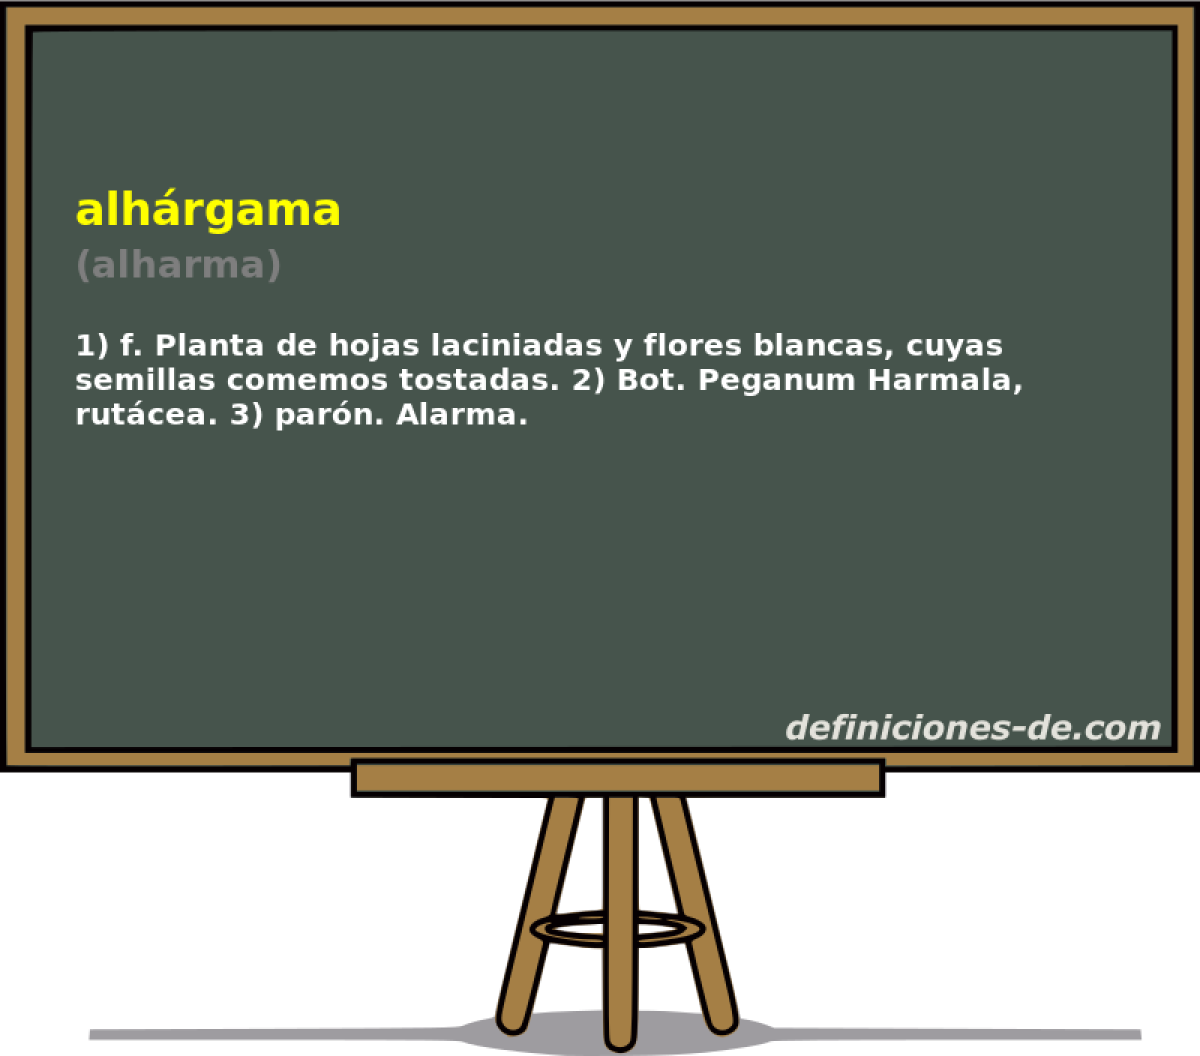 alhrgama (alharma)